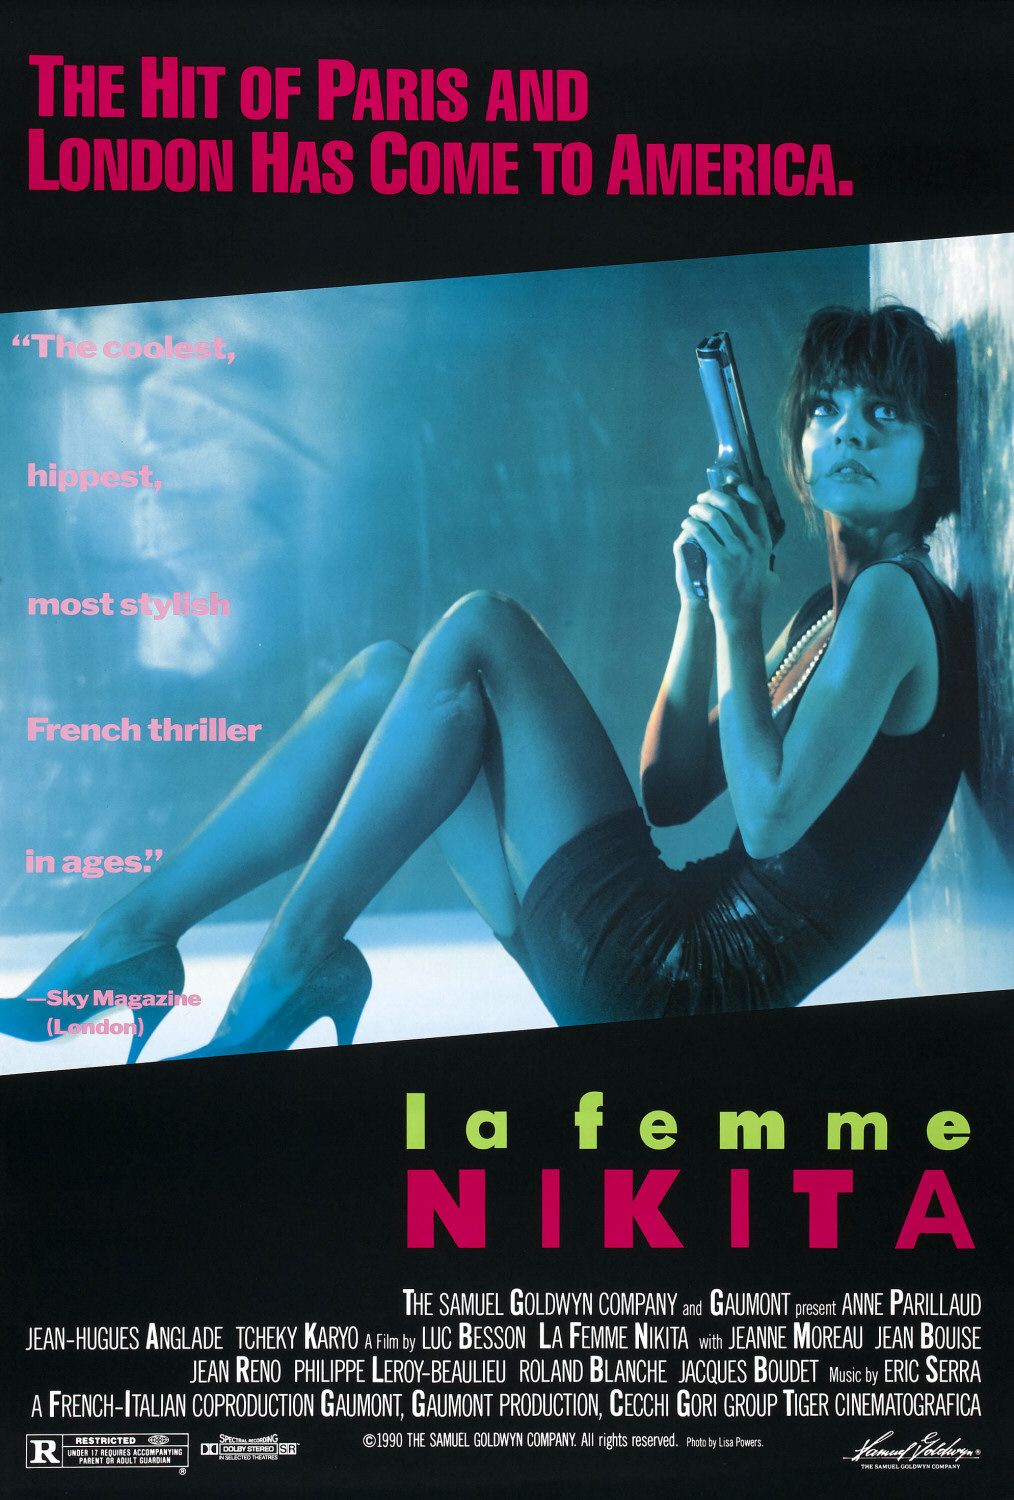 Stiahni si HD Filmy Brutalna Nikita / La Femme Nikita (1990)(CZ/EN/FR)[1080p] = CSFD 81%